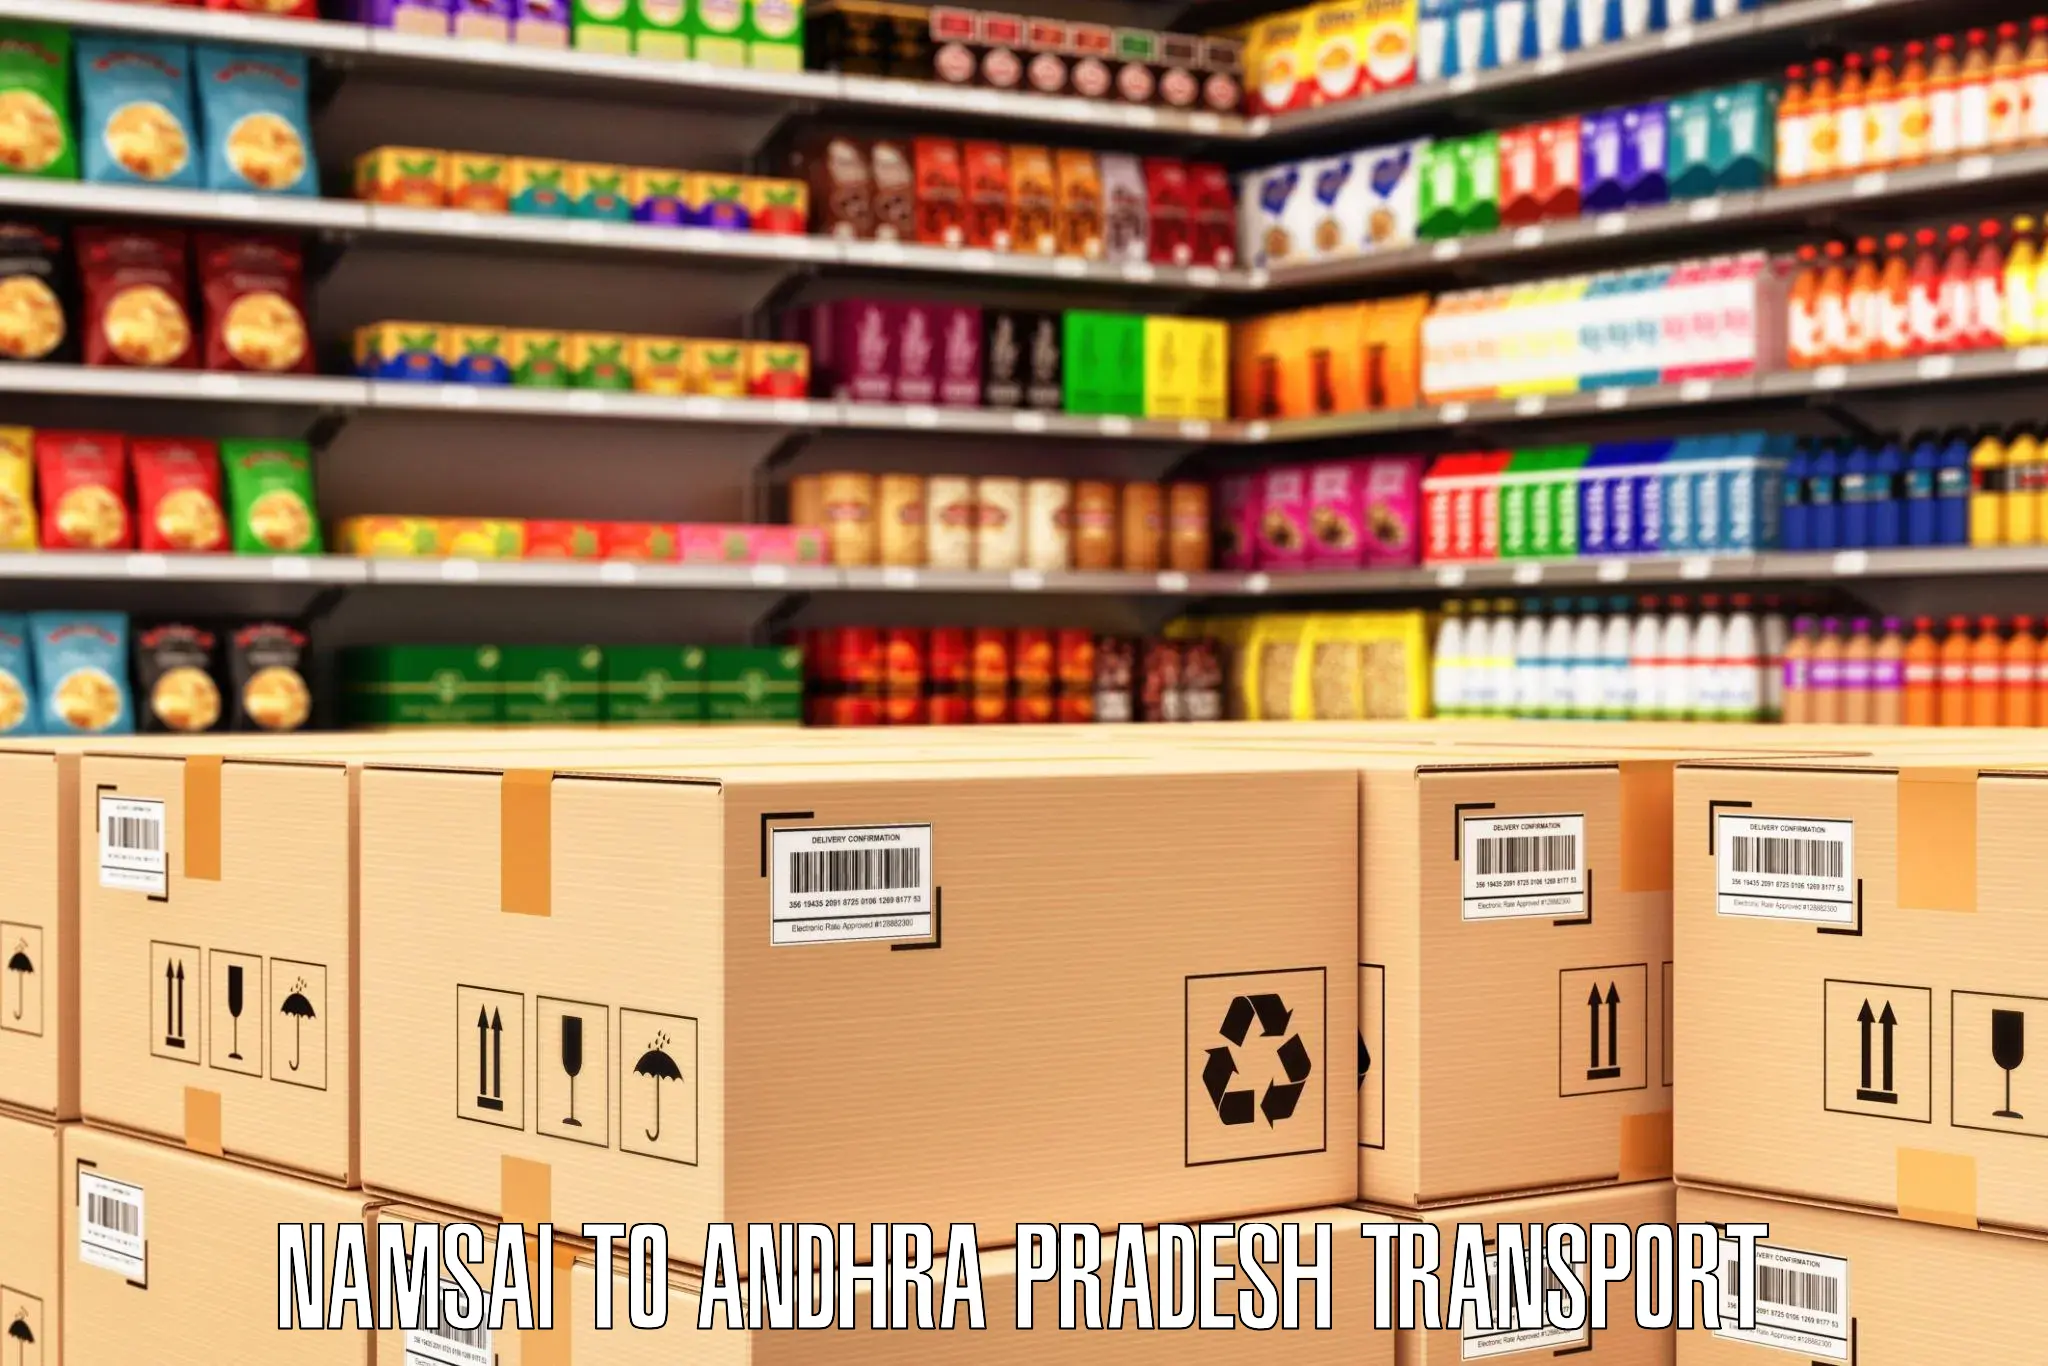 Transport in sharing Namsai to NIT Andhra Pradesh